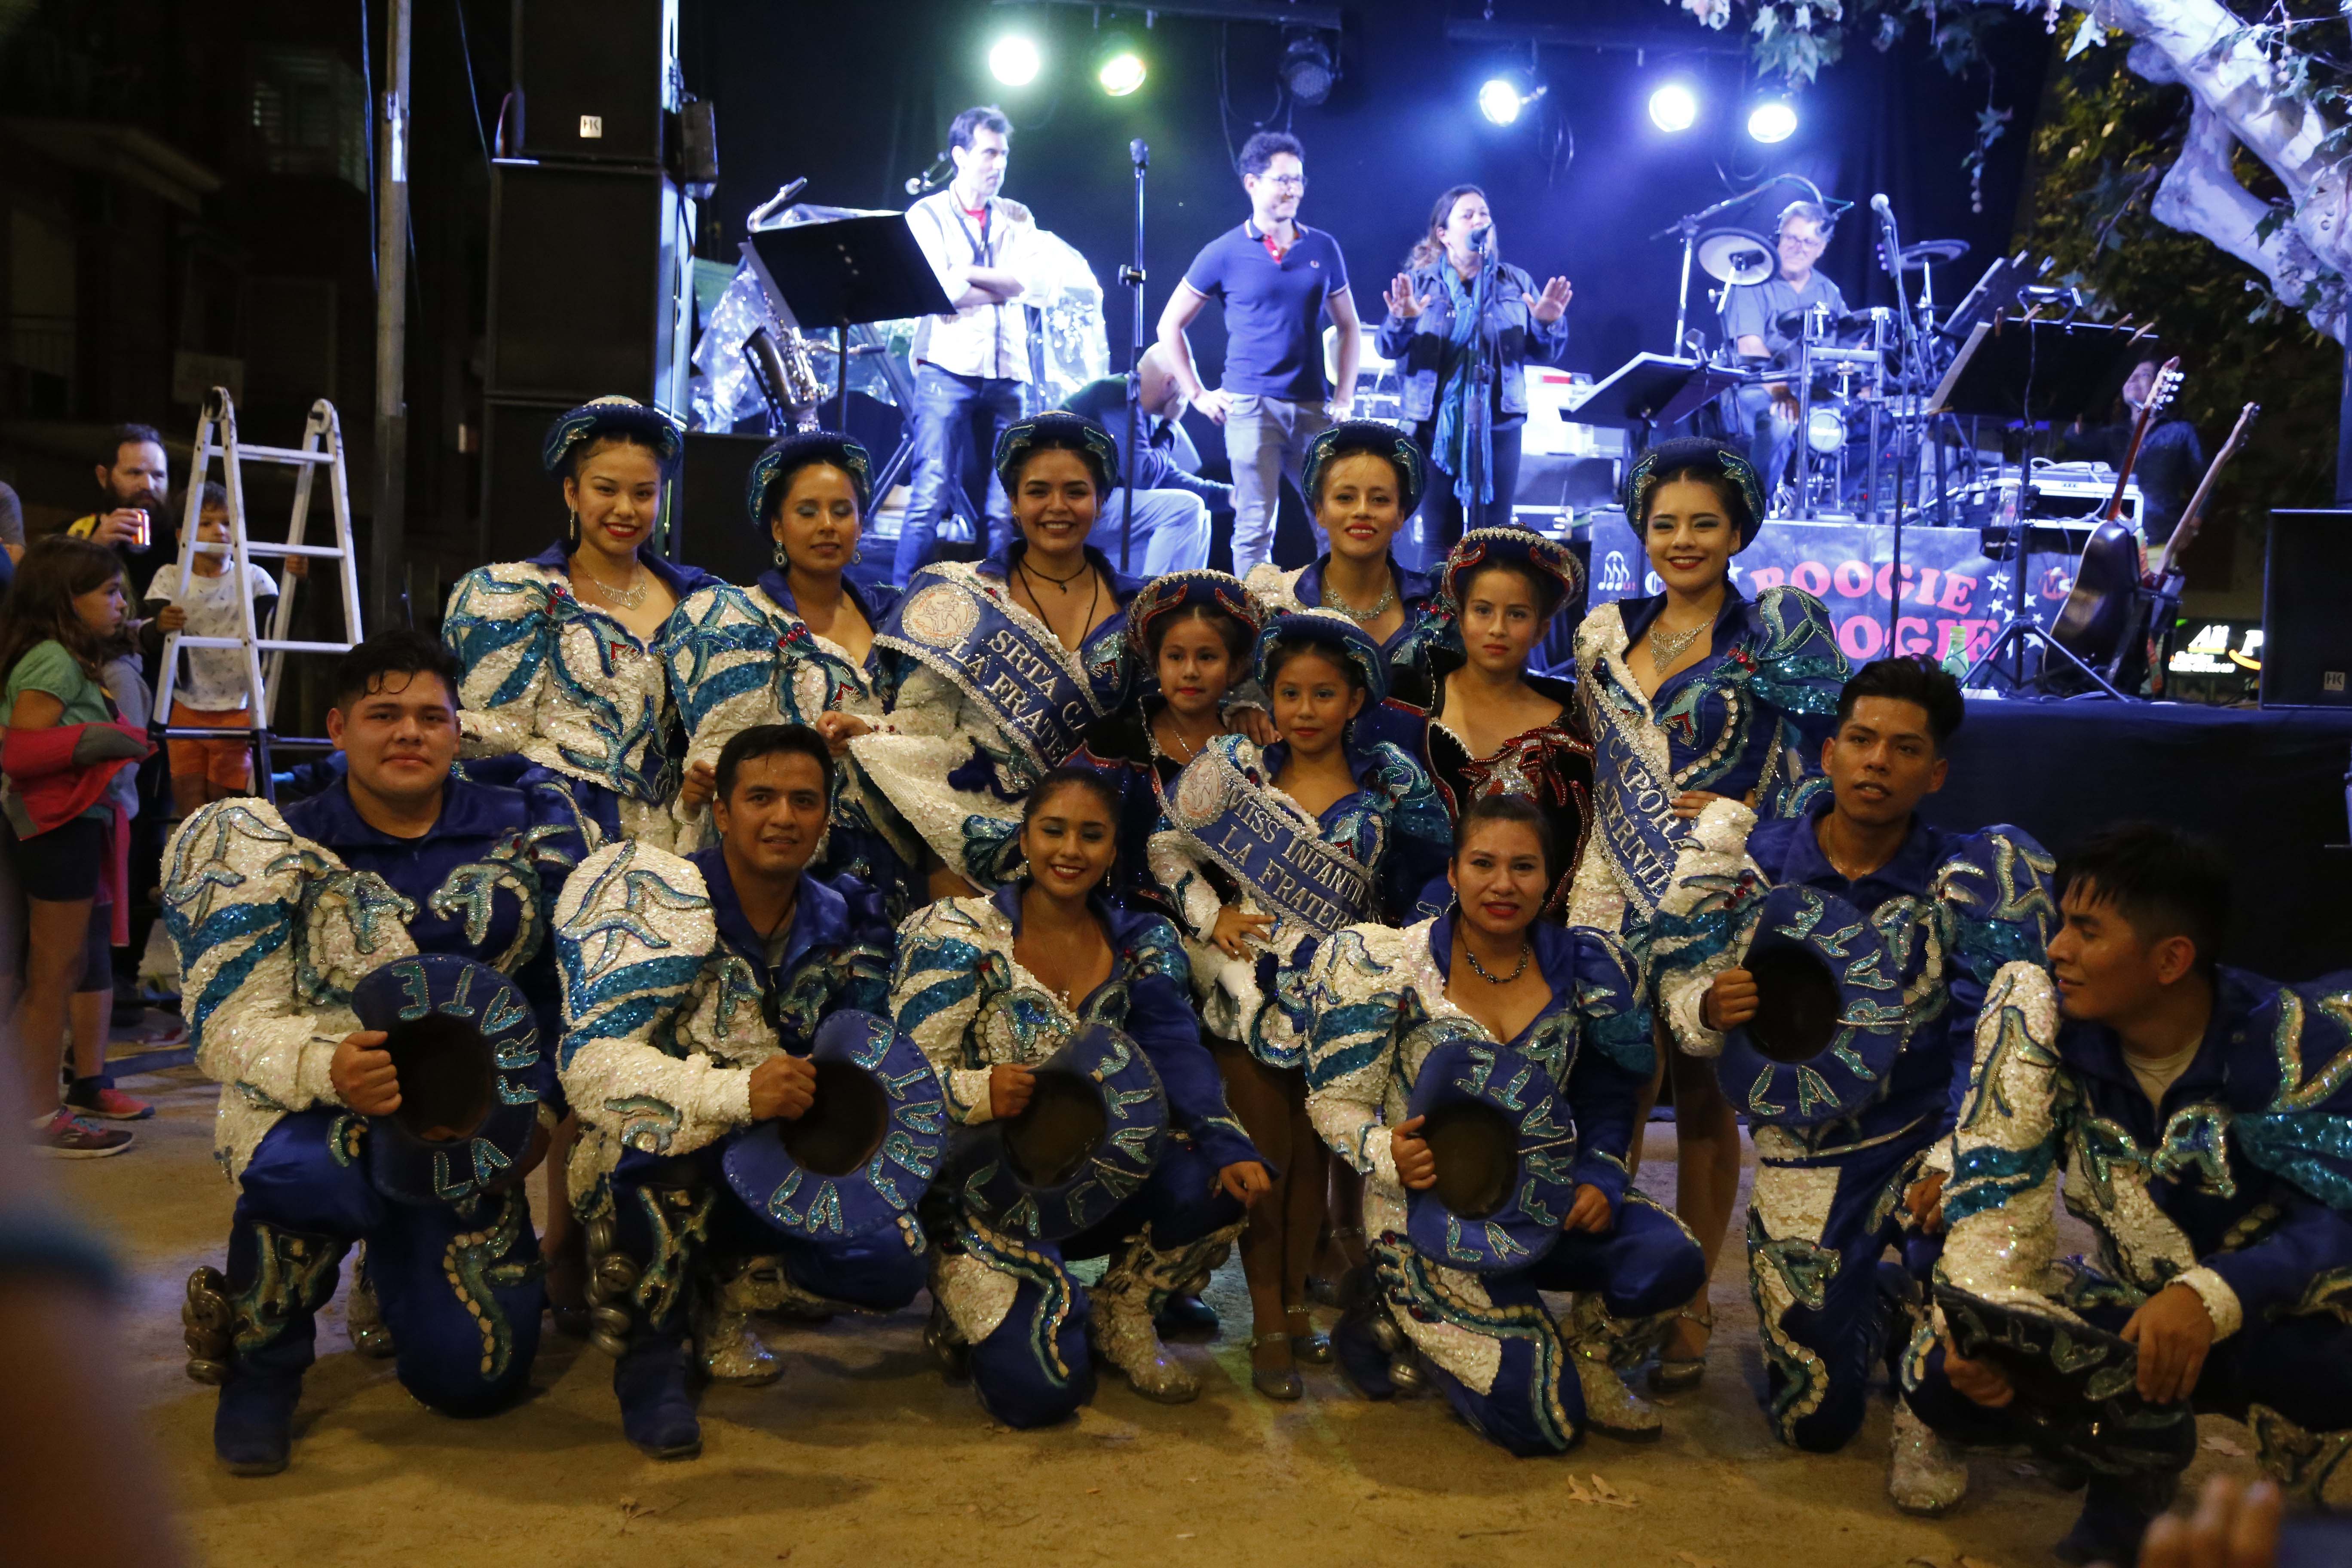 Rua boliviana amb els Caporales "La Fraternidad" de Sant Cugat. FOTO: Anna Bassa